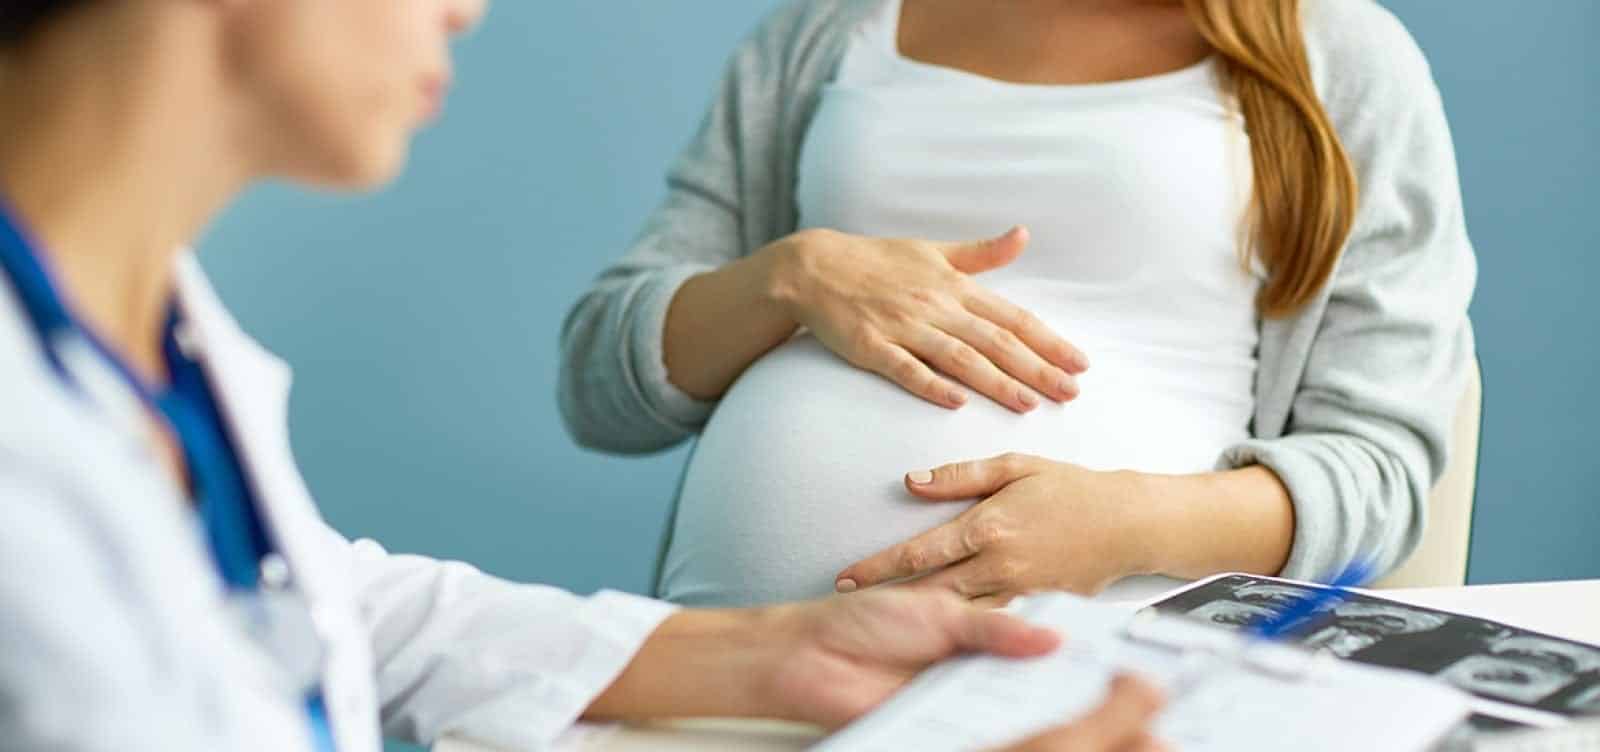 Conheça alguns dos principais mitos sobre a maternidade